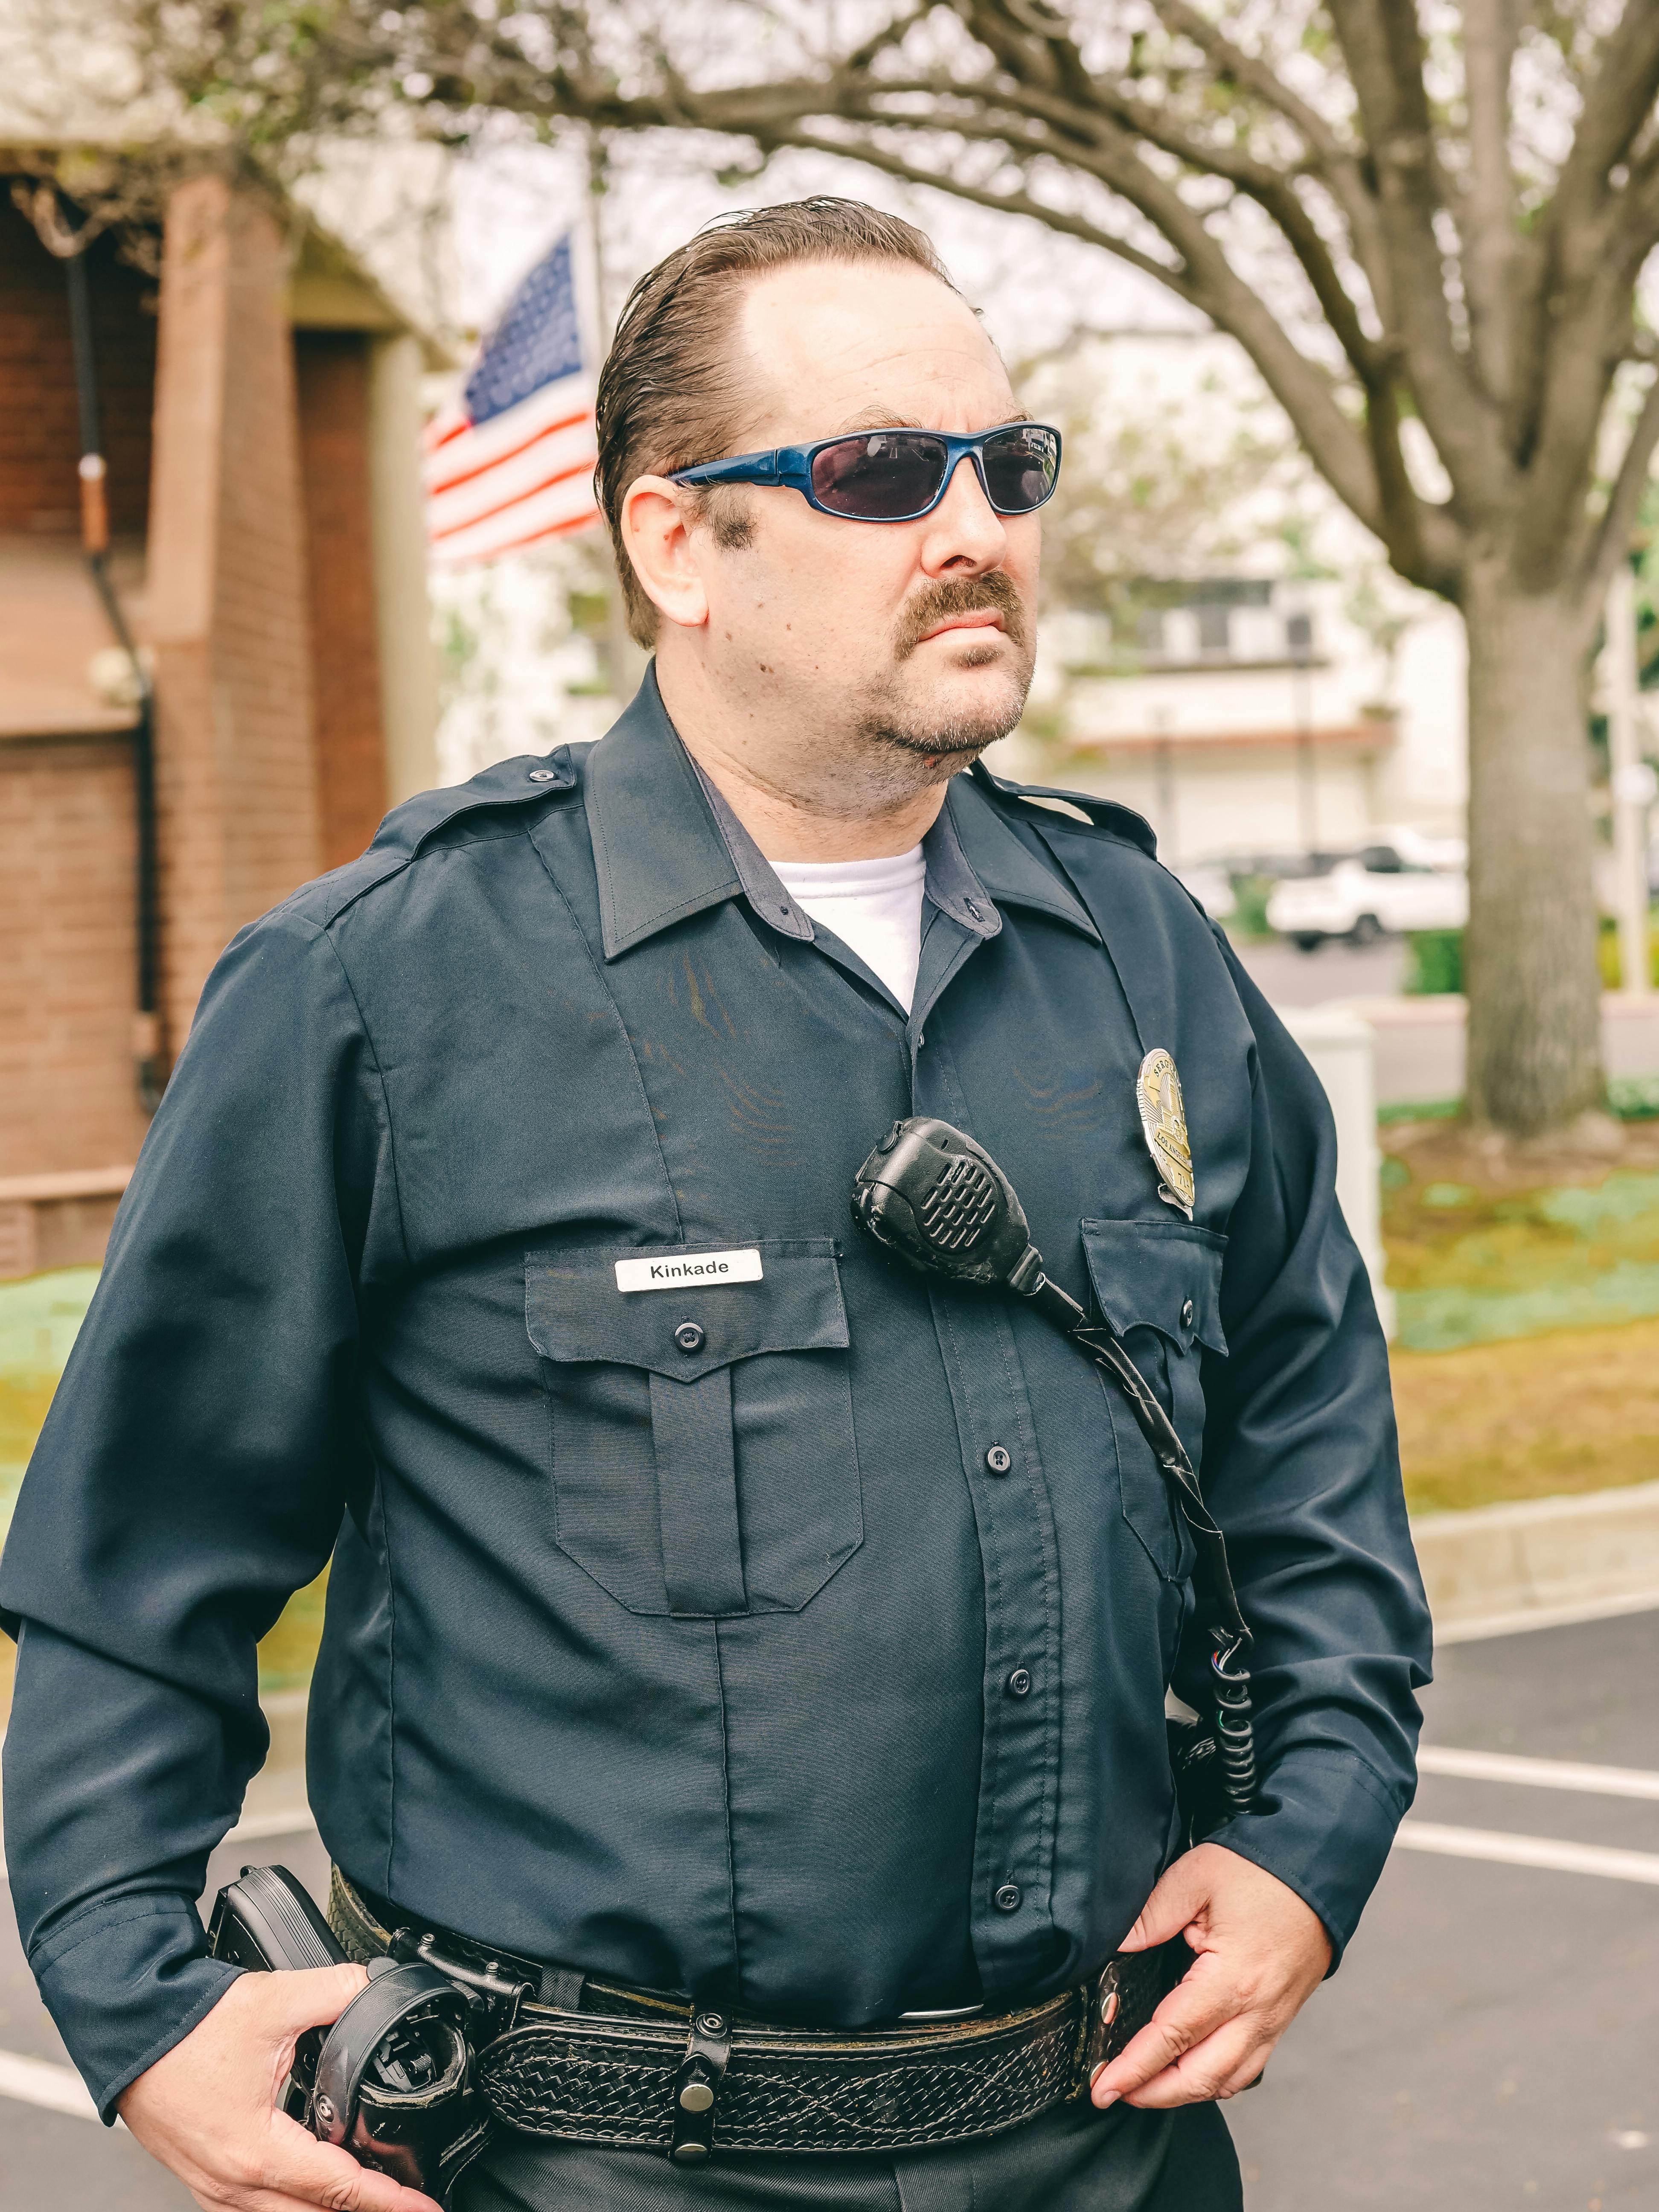 Un policía de aspecto severo | Fuente: Pexels